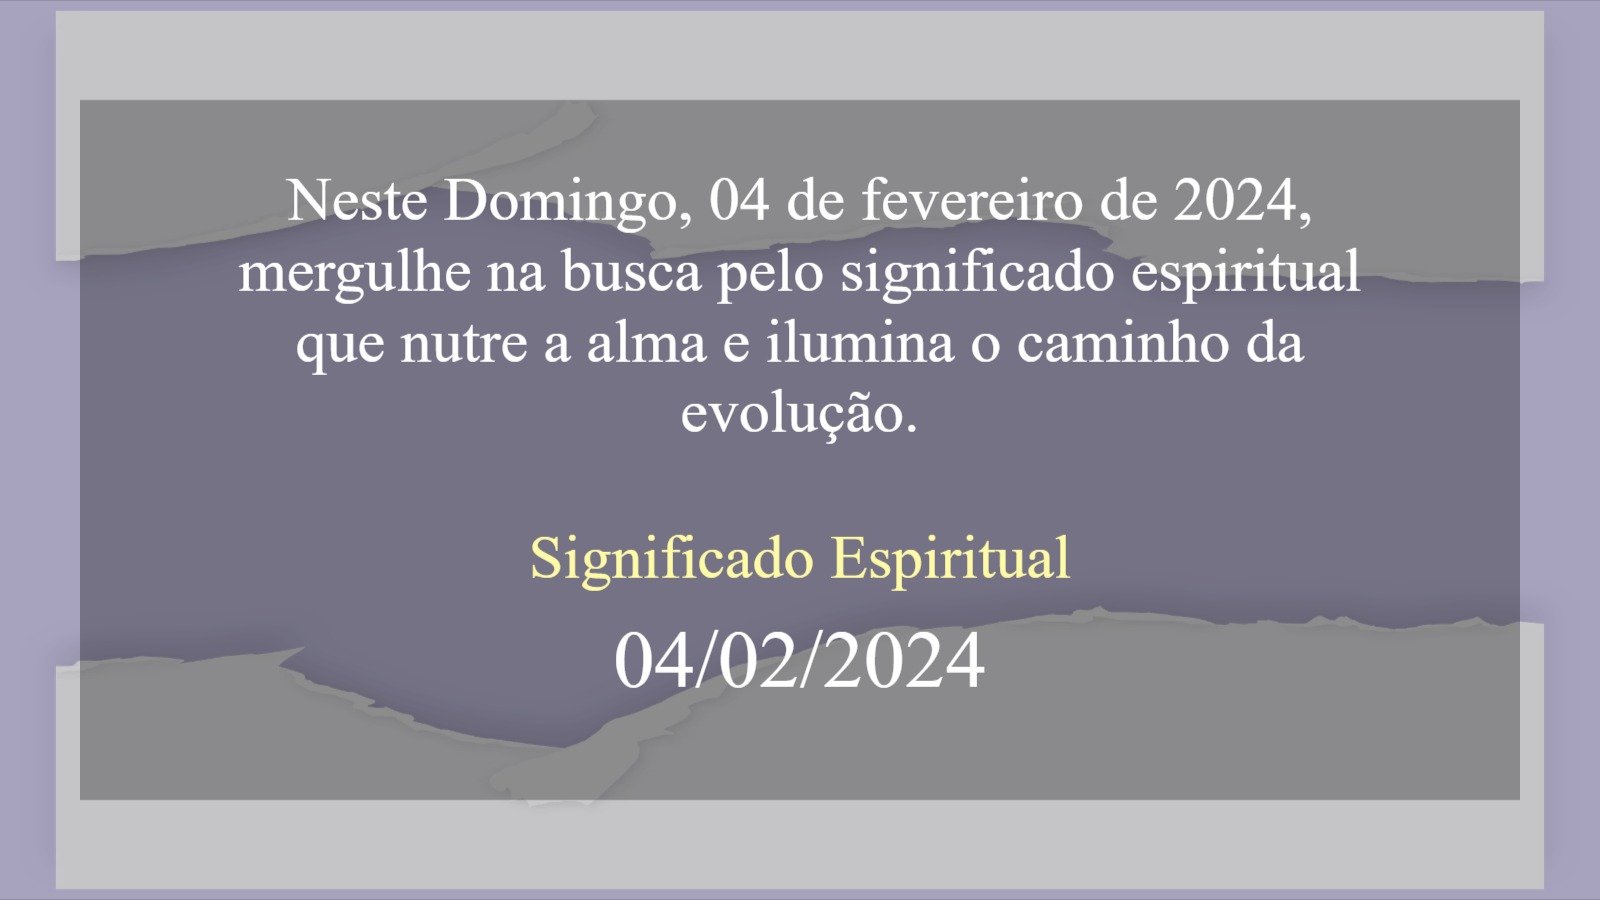 Significado Espiritual 04 de fevereiro de 2024 - (domingo, 04/02/2024) - hoje